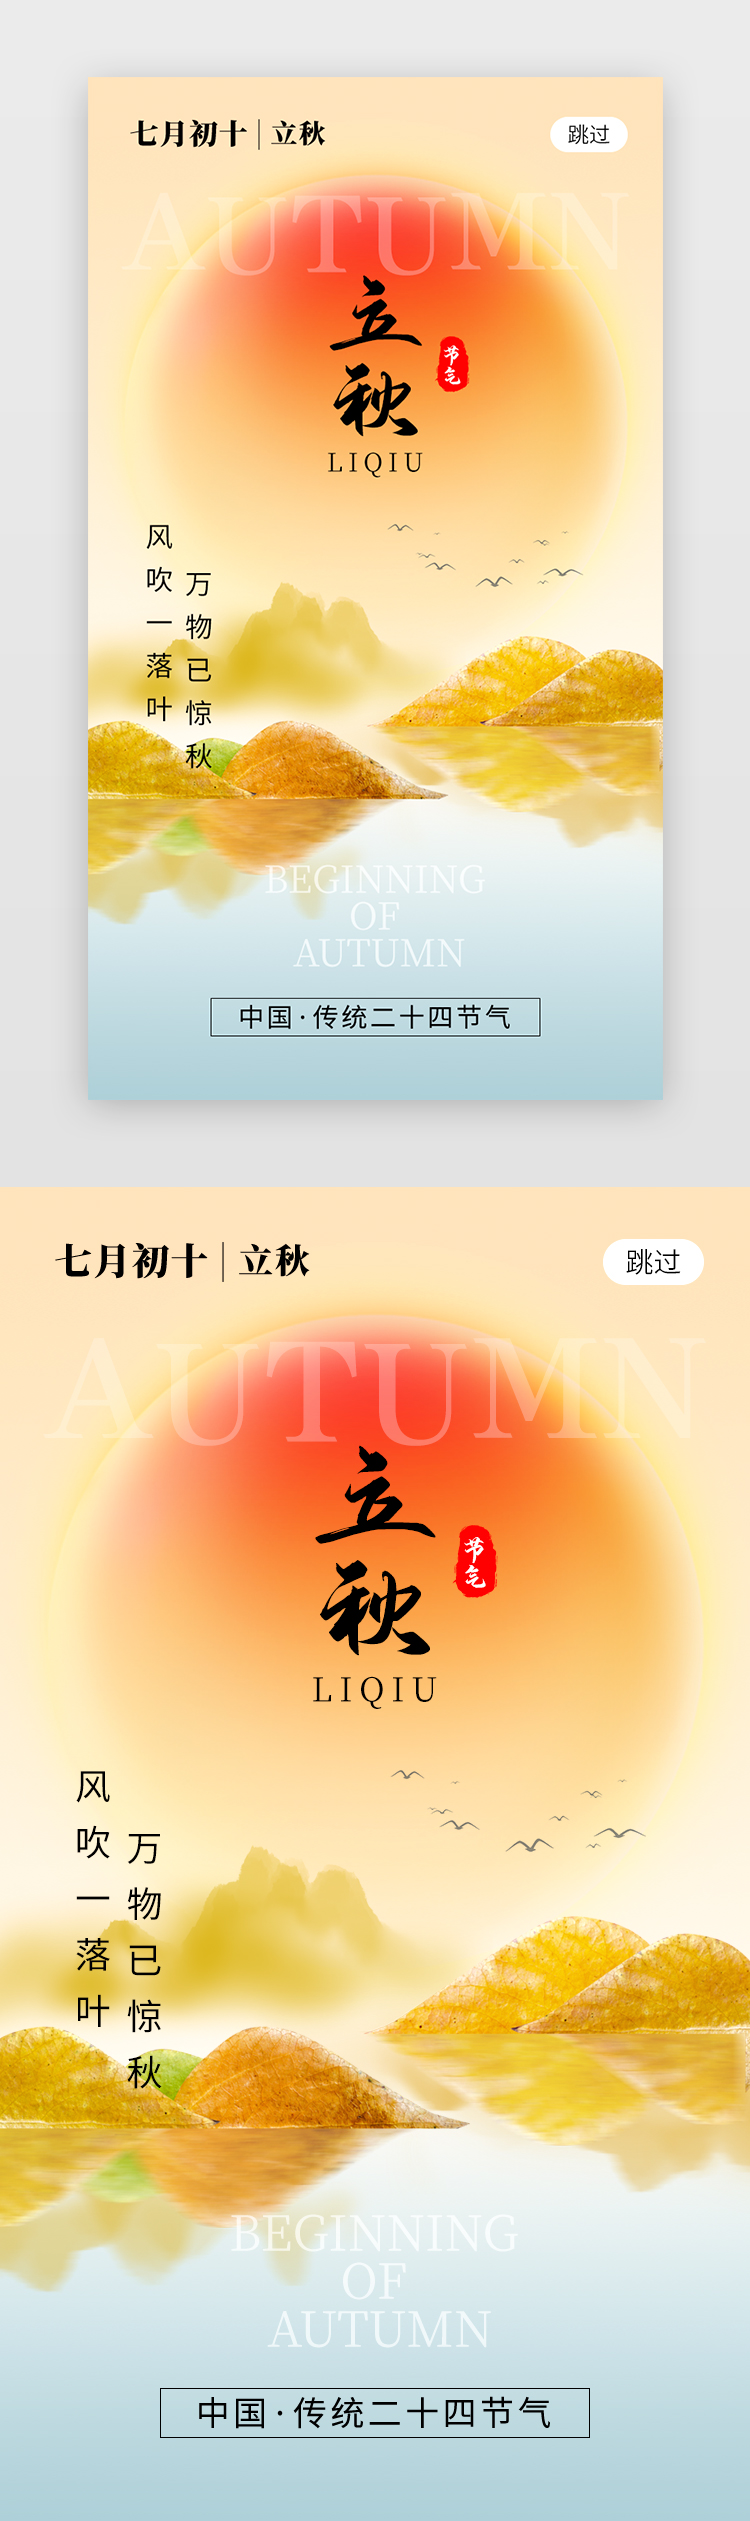 二十四节气立秋app闪屏创意橙黄色太阳图片